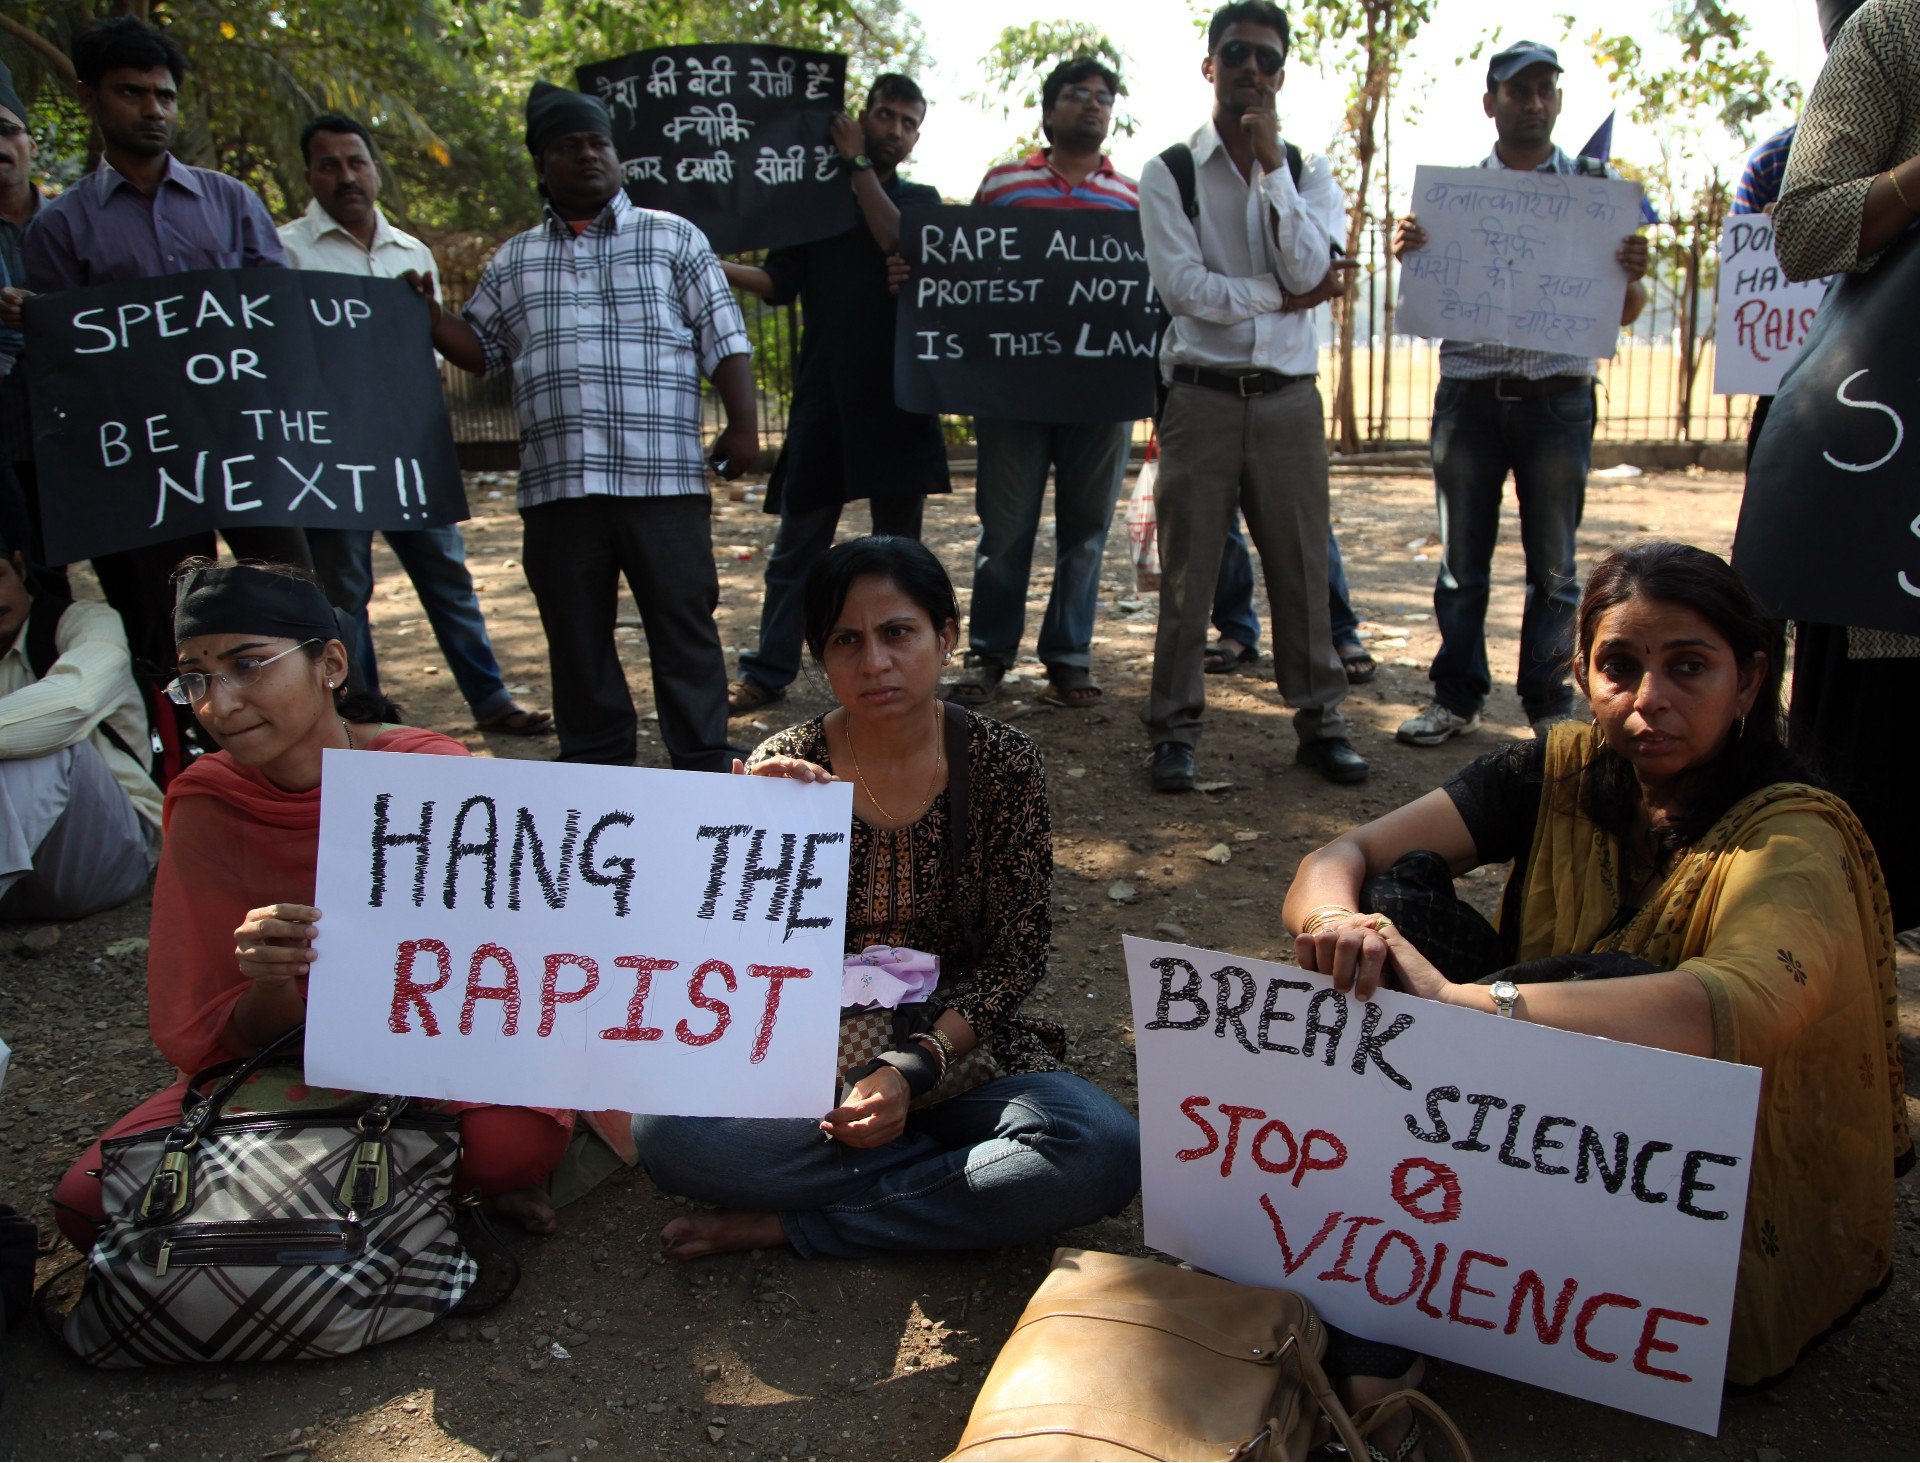 Индийцы во время молчаливого протеста требуют наказания для виновных в изнасиловании в Дели 23-летней студентки, 2012 год. Фото: ЕРА